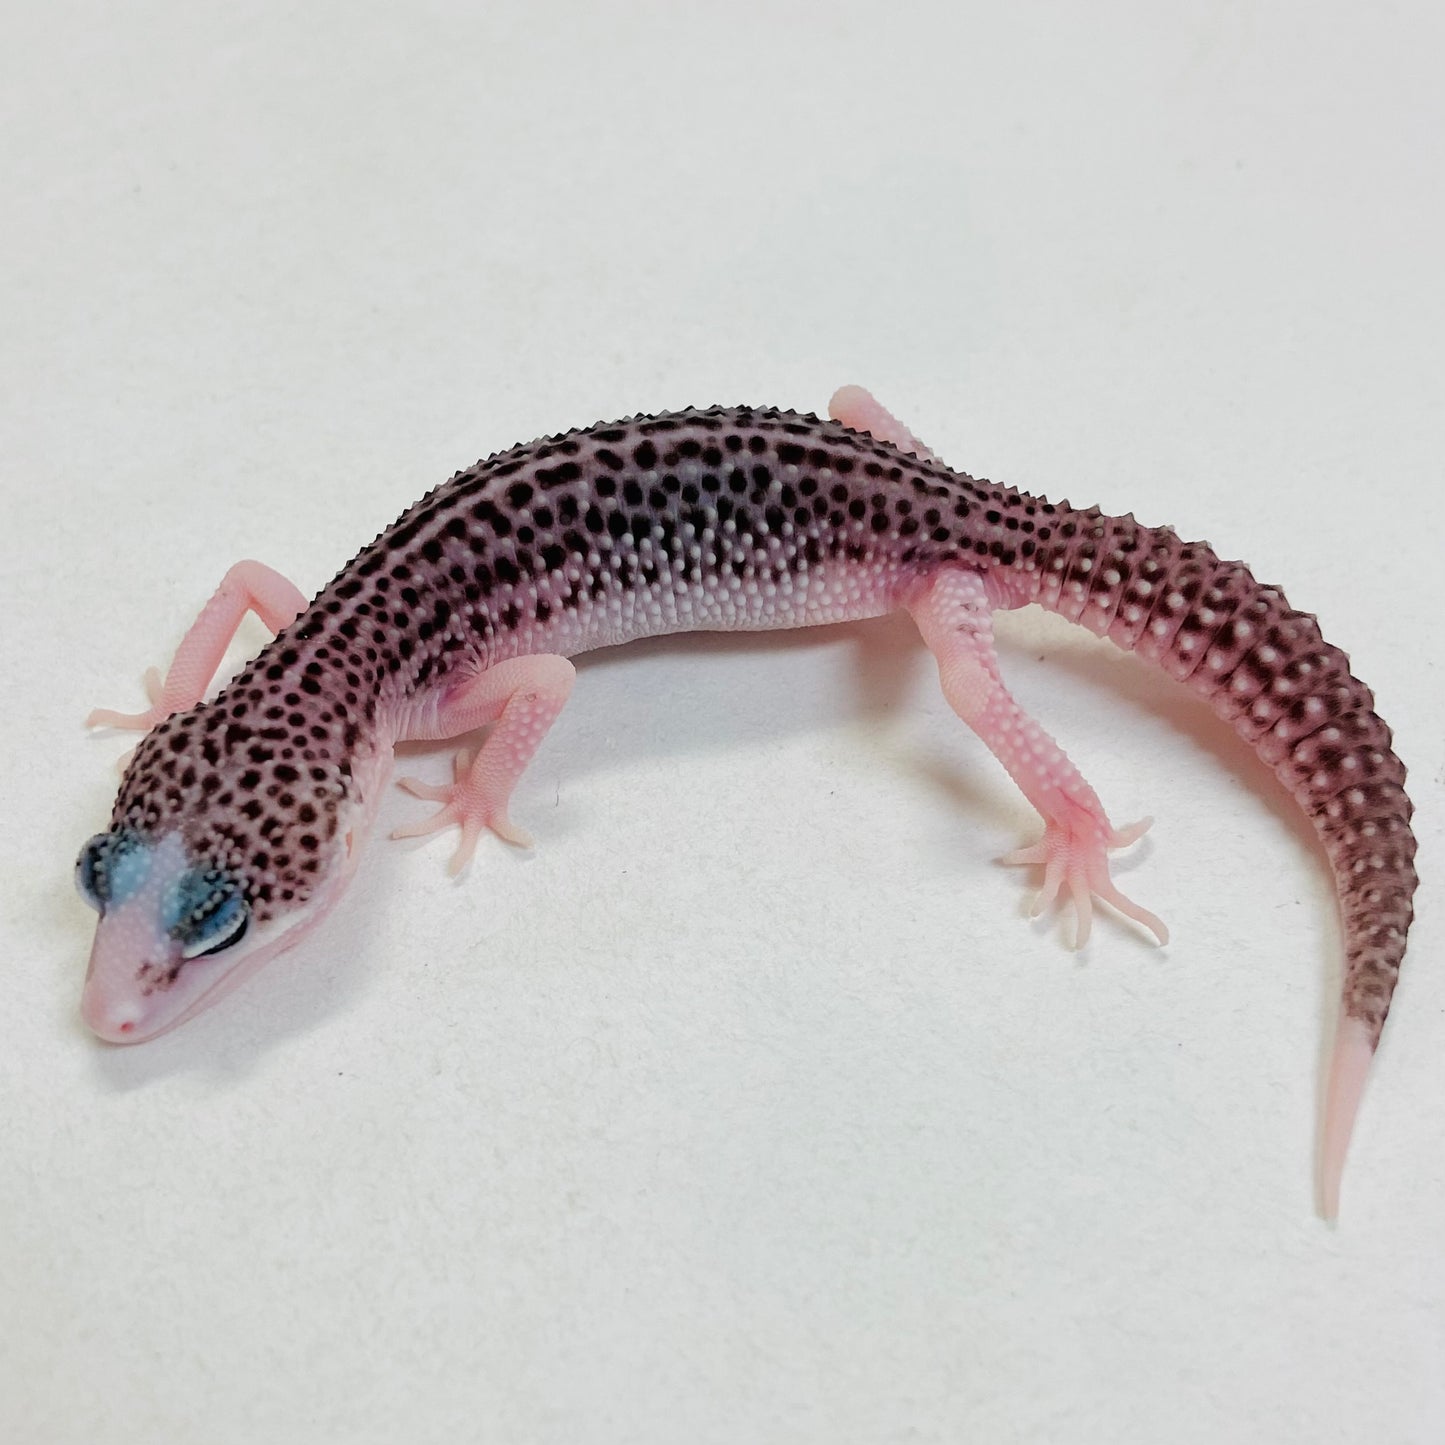 Pied Galaxy Pos Het Tremper Leopard Gecko- Pos Male #C-C7-53123-1